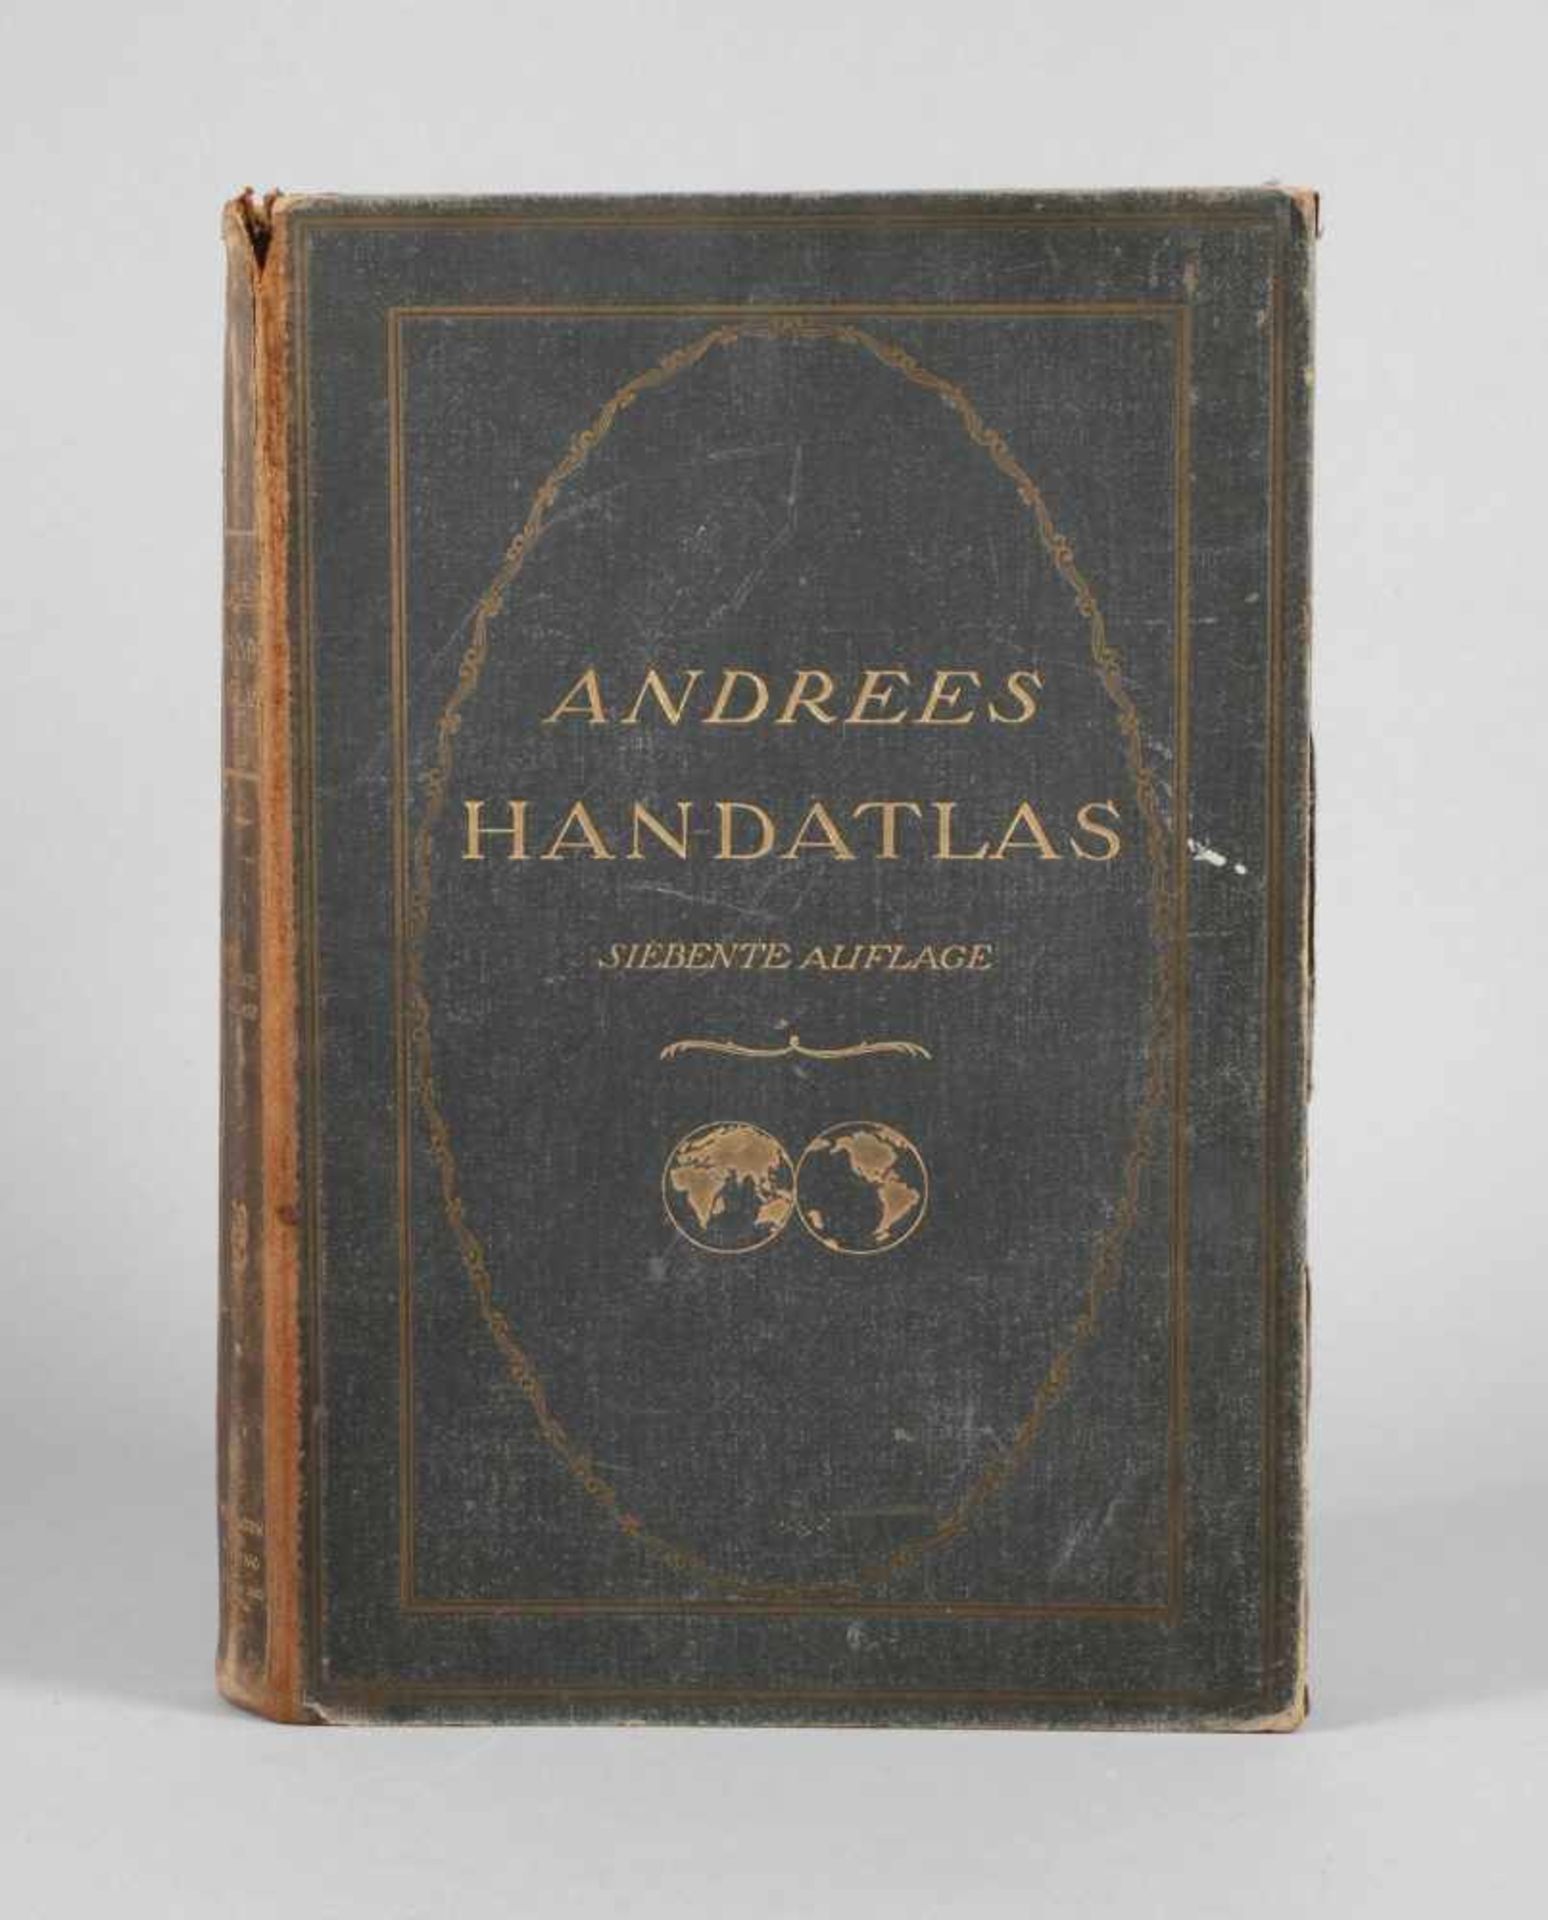 Andrees Allgemeiner Handatlasin 222 Haupt- und 192 Nebenkarten, 7. Aufl., hrsg. von E. Ambrosius,